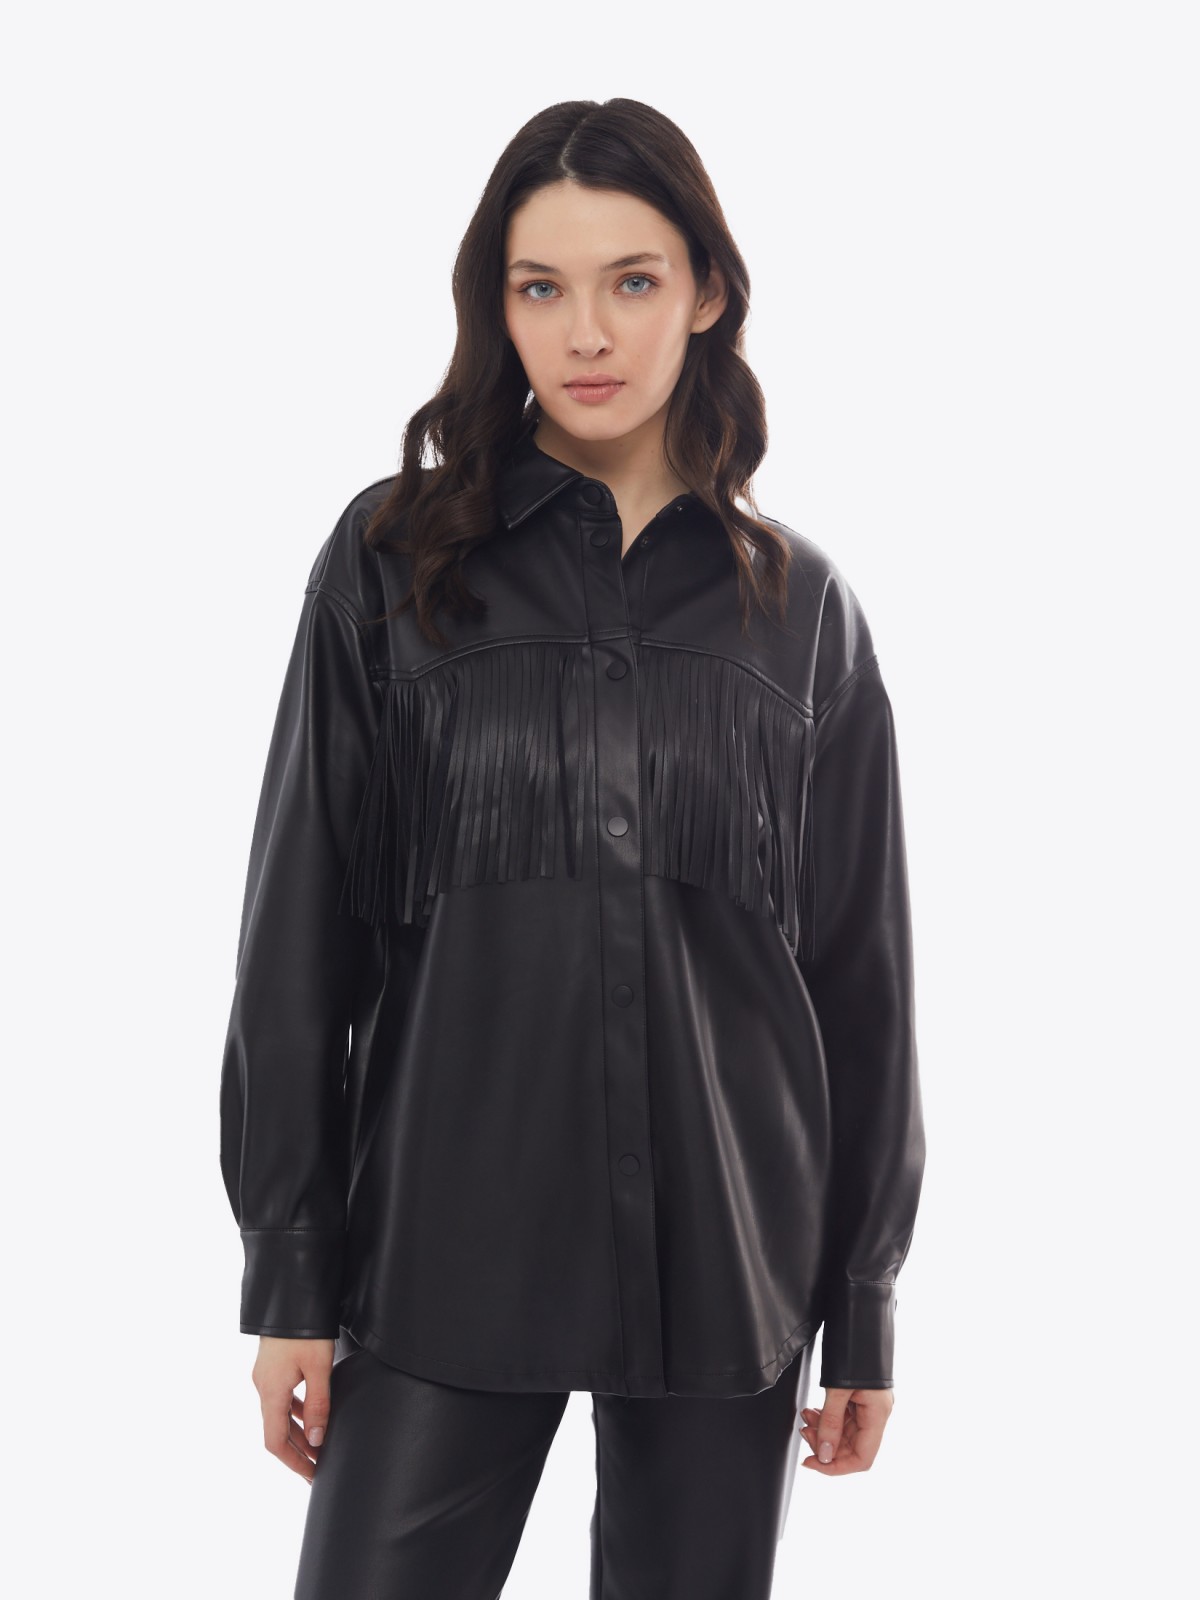 Куртка-рубашка из экокожи с бахромой на кокетке zolla 02413540L051, цвет черный, размер S - фото 3